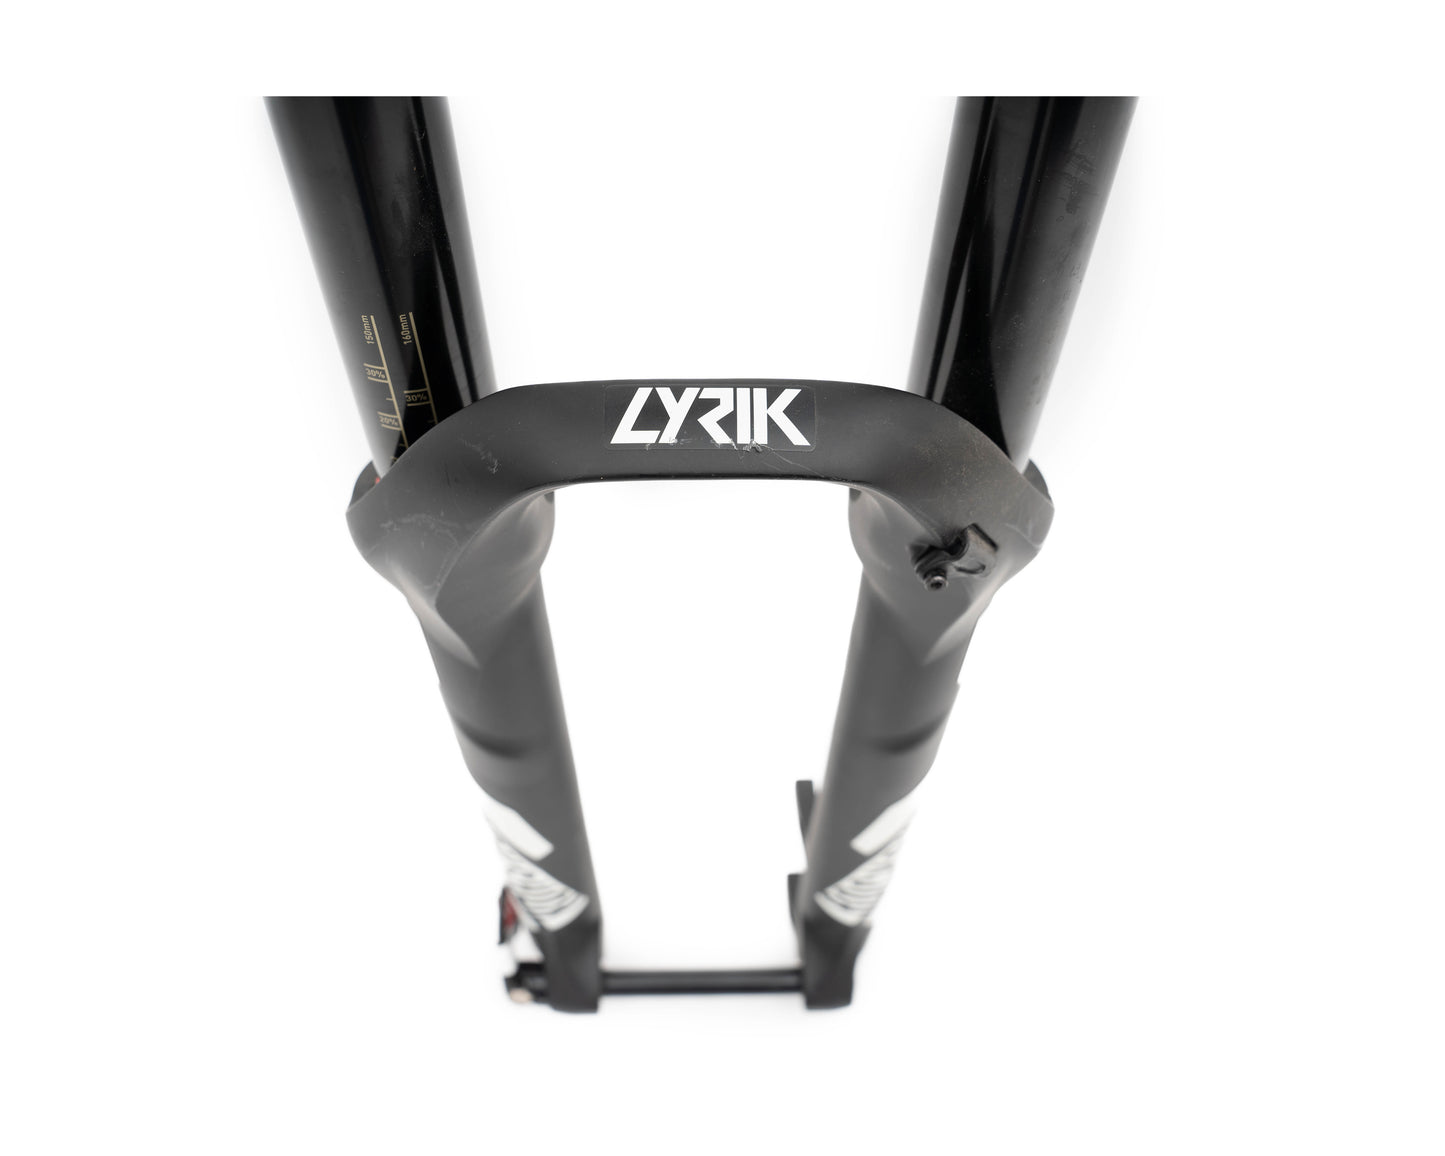 2015 Rockshox Lyrik (Take off) (All parts intact)